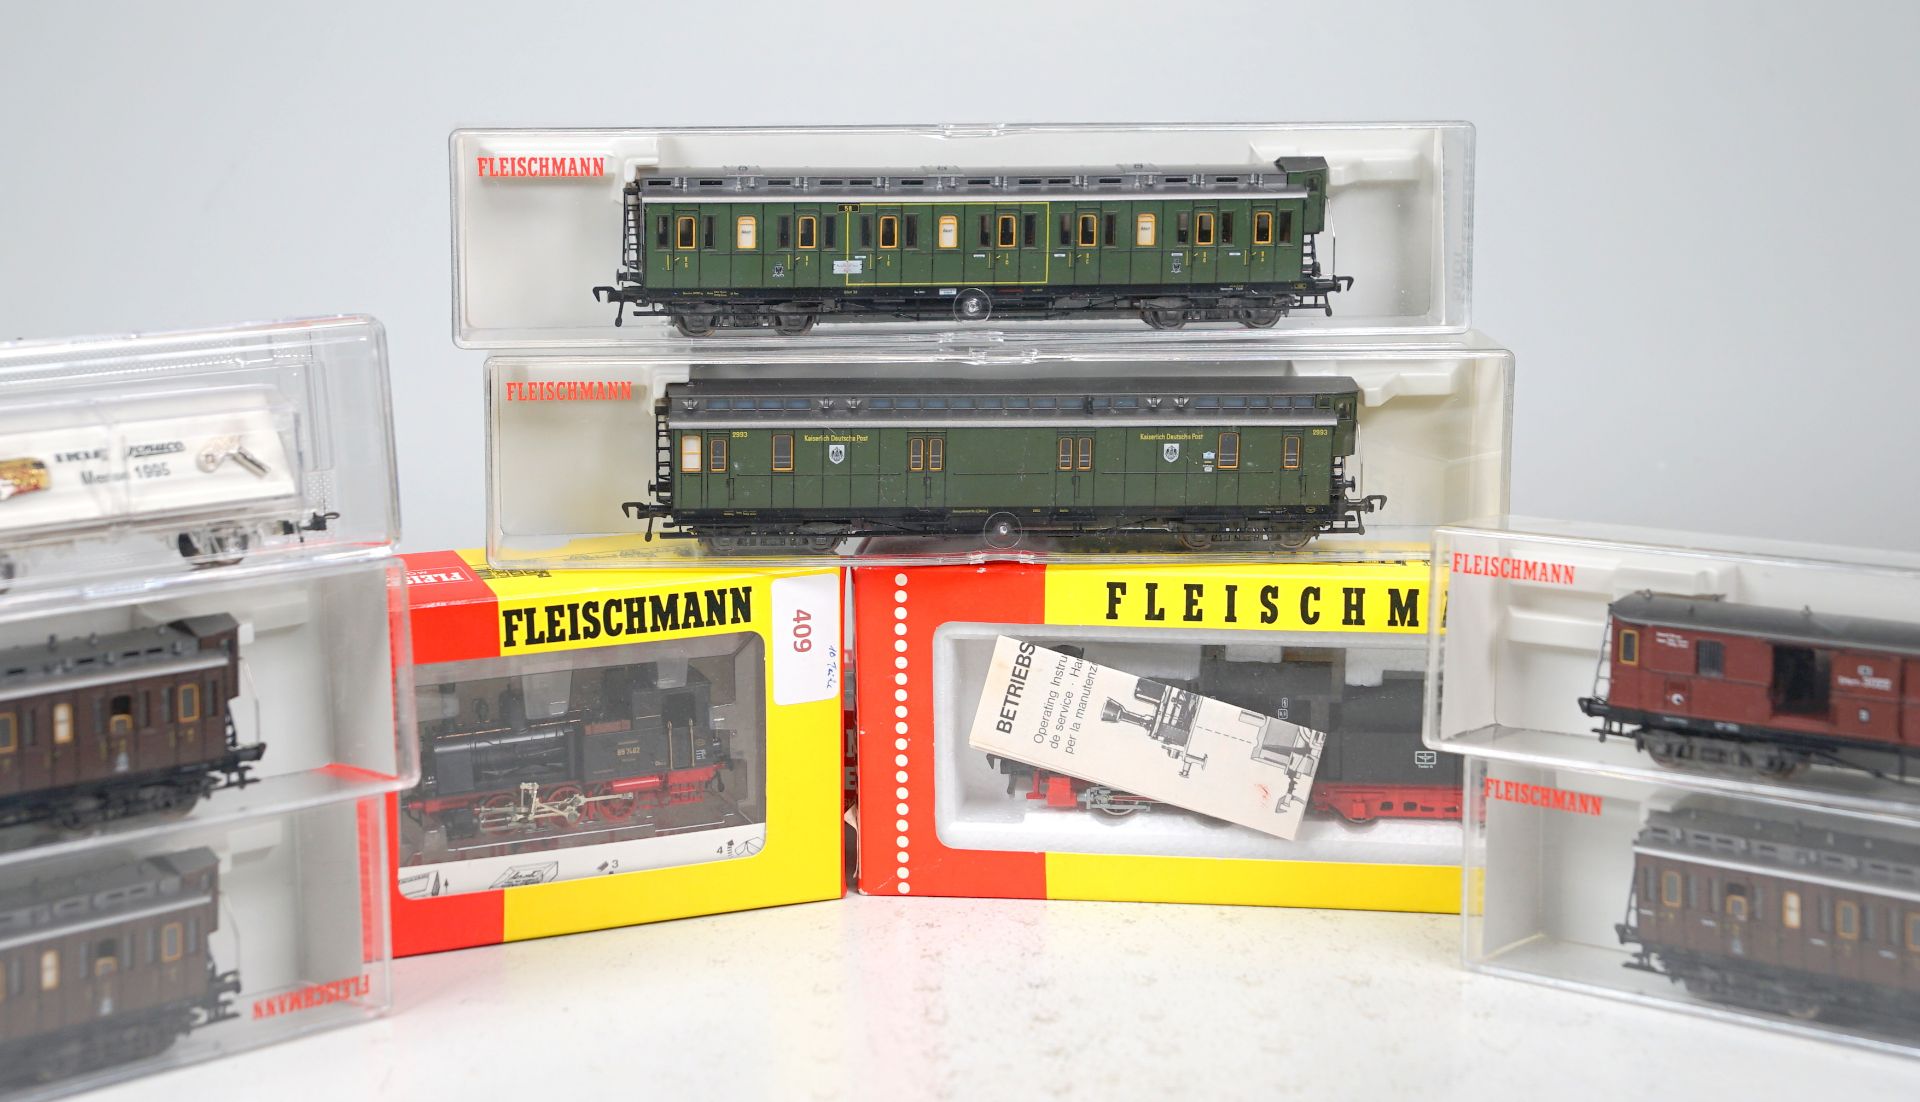 Fleischmann H0 Konvolut 10-teilig mit 2 Loks, 6 Wagen, Gleisen & Trix Schuco-Sonderwagen - Bild 2 aus 2